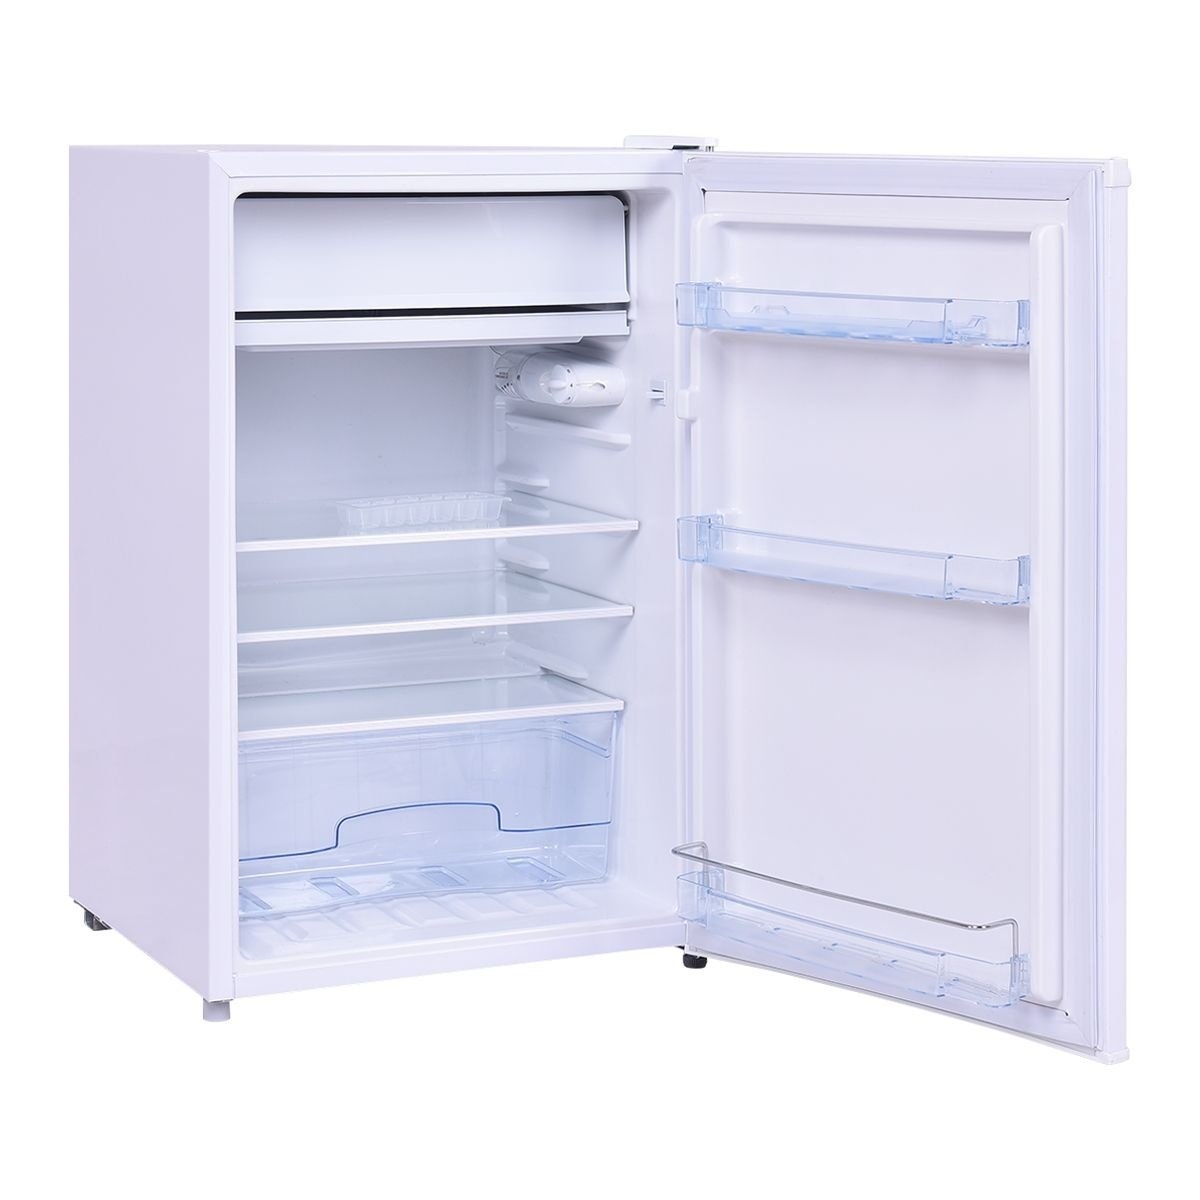 ab 2 günstig Kaufen-Kühlschrank mit Gefrierfach Cool Cabinet Freezer 123L kostenlos. Kühlschrank mit Gefrierfach Cool Cabinet Freezer 123L kostenlos <![CDATA[Der große Kühlschrank steht dem großen Kühlschrank in nichts nach. Der Kühlschrank hat ein Volumen von